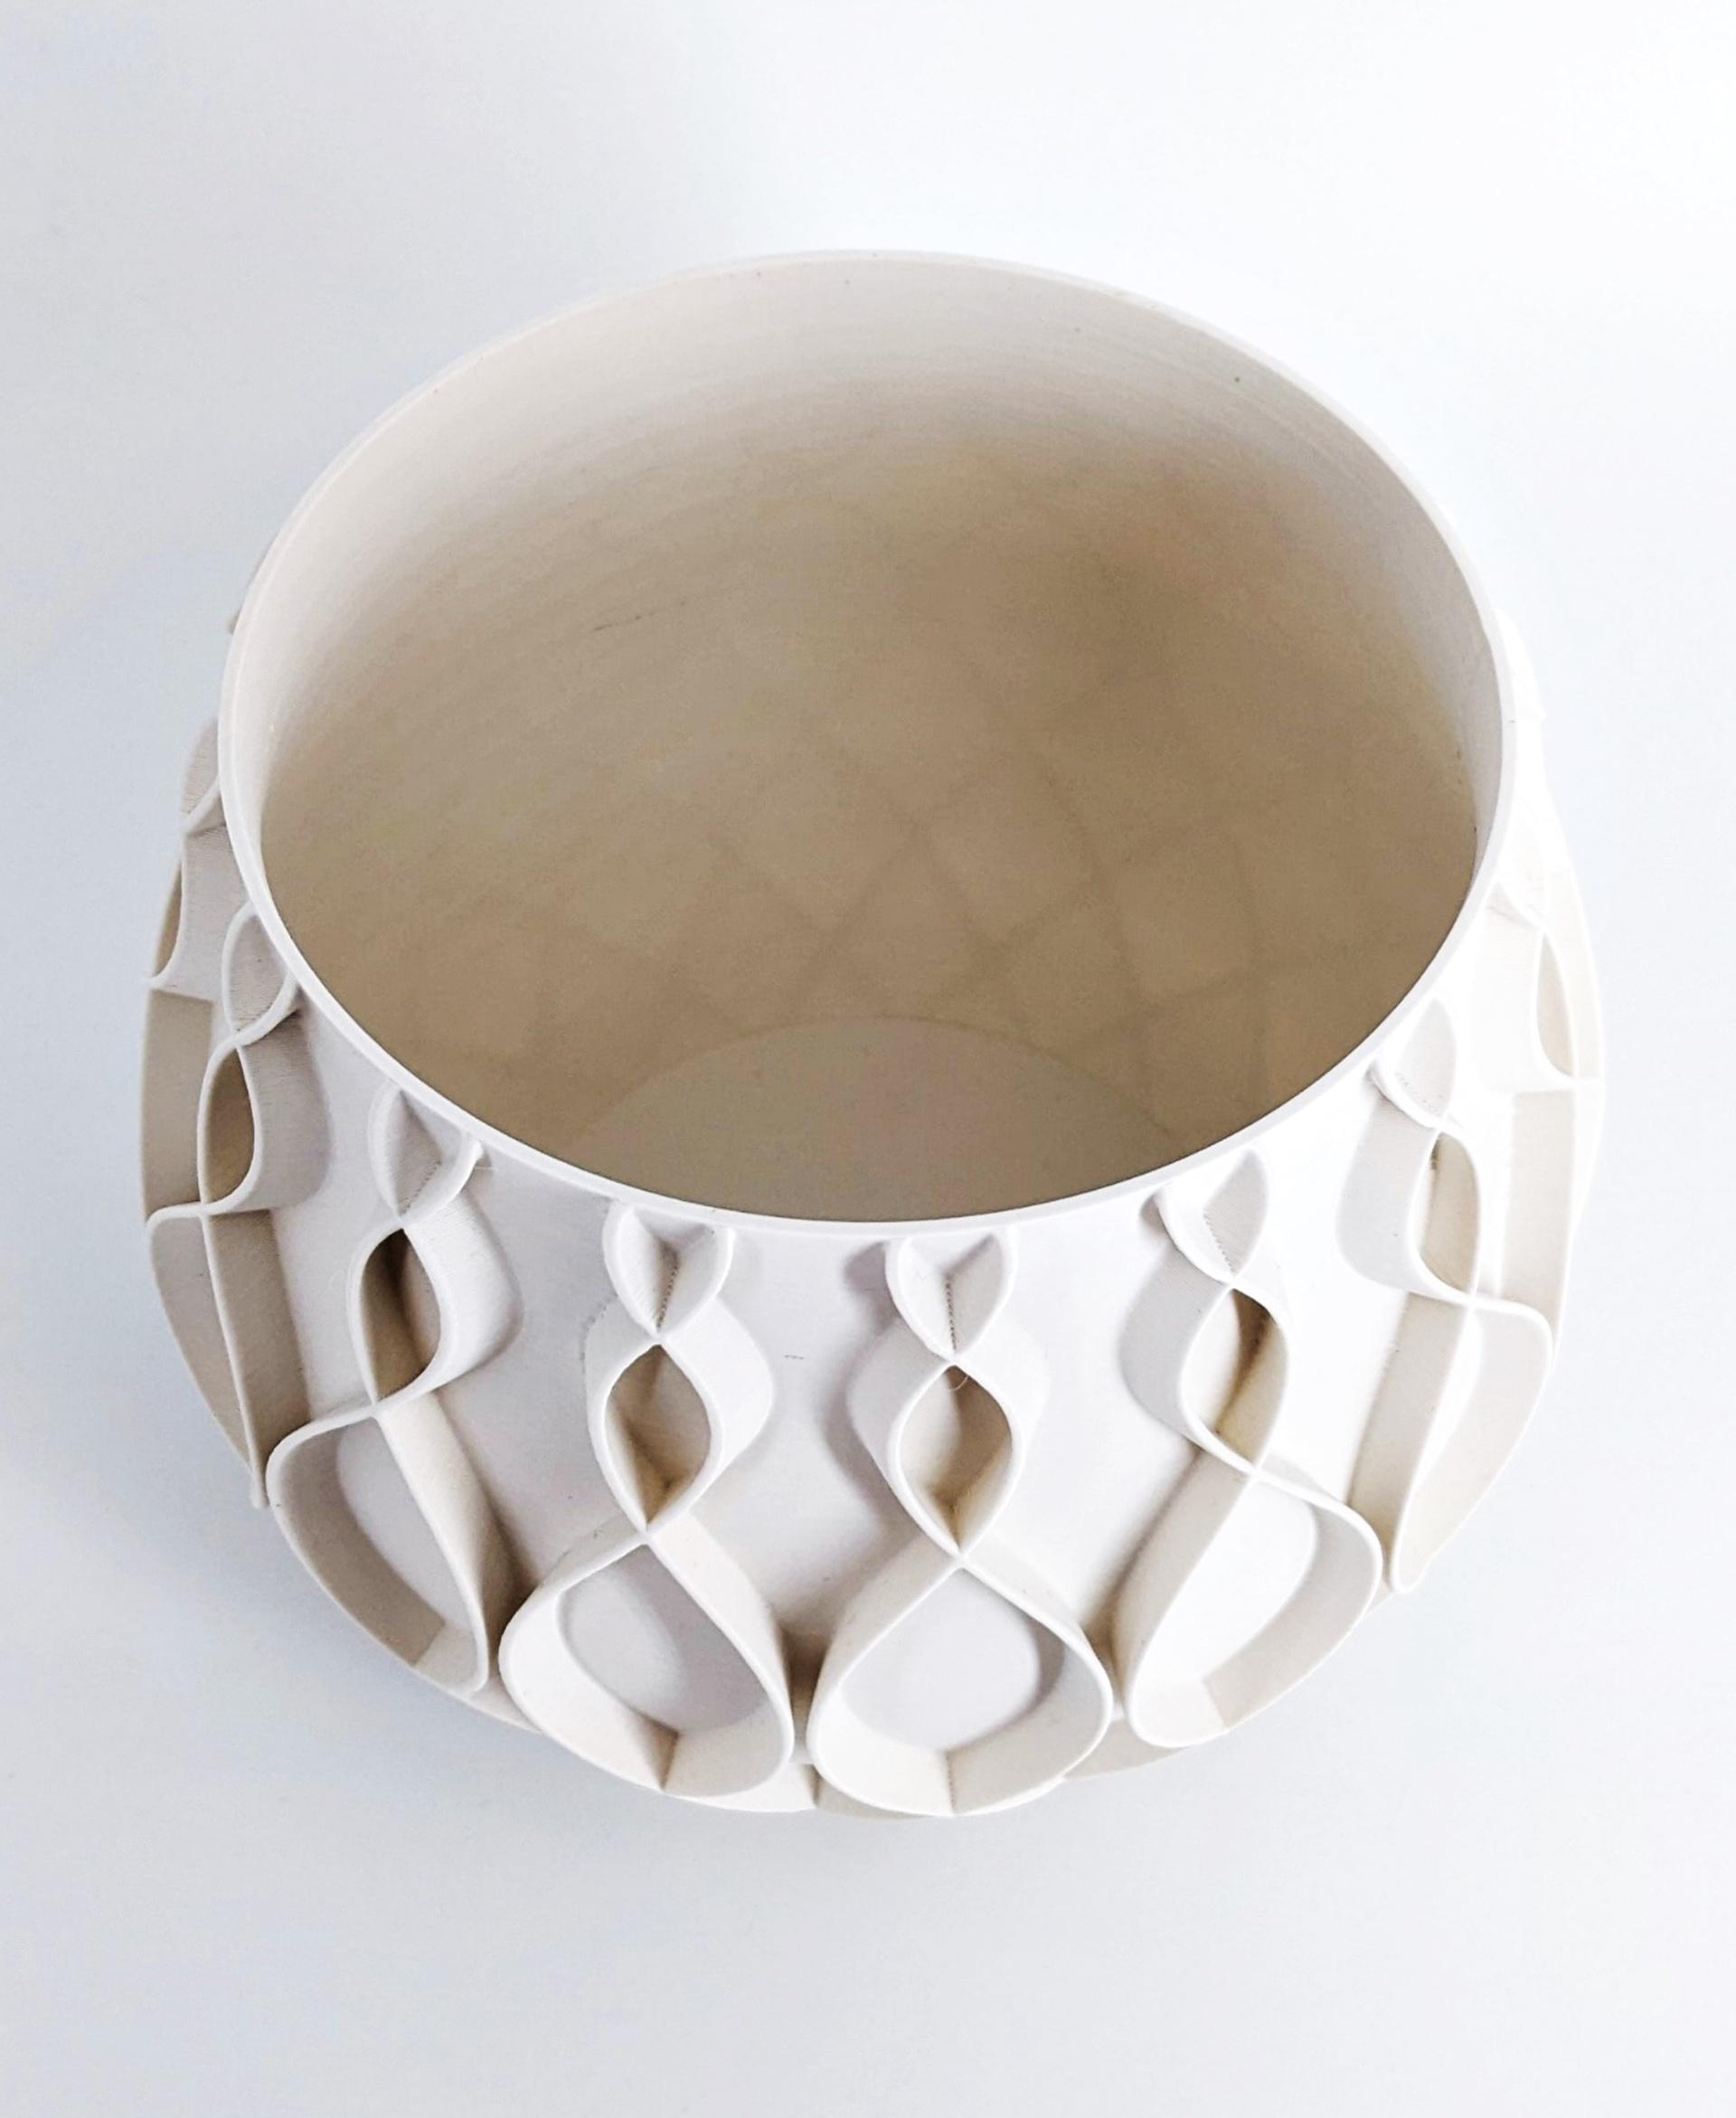 STL file Soft boiled egg holder cup Duck 🥚・3D printable design